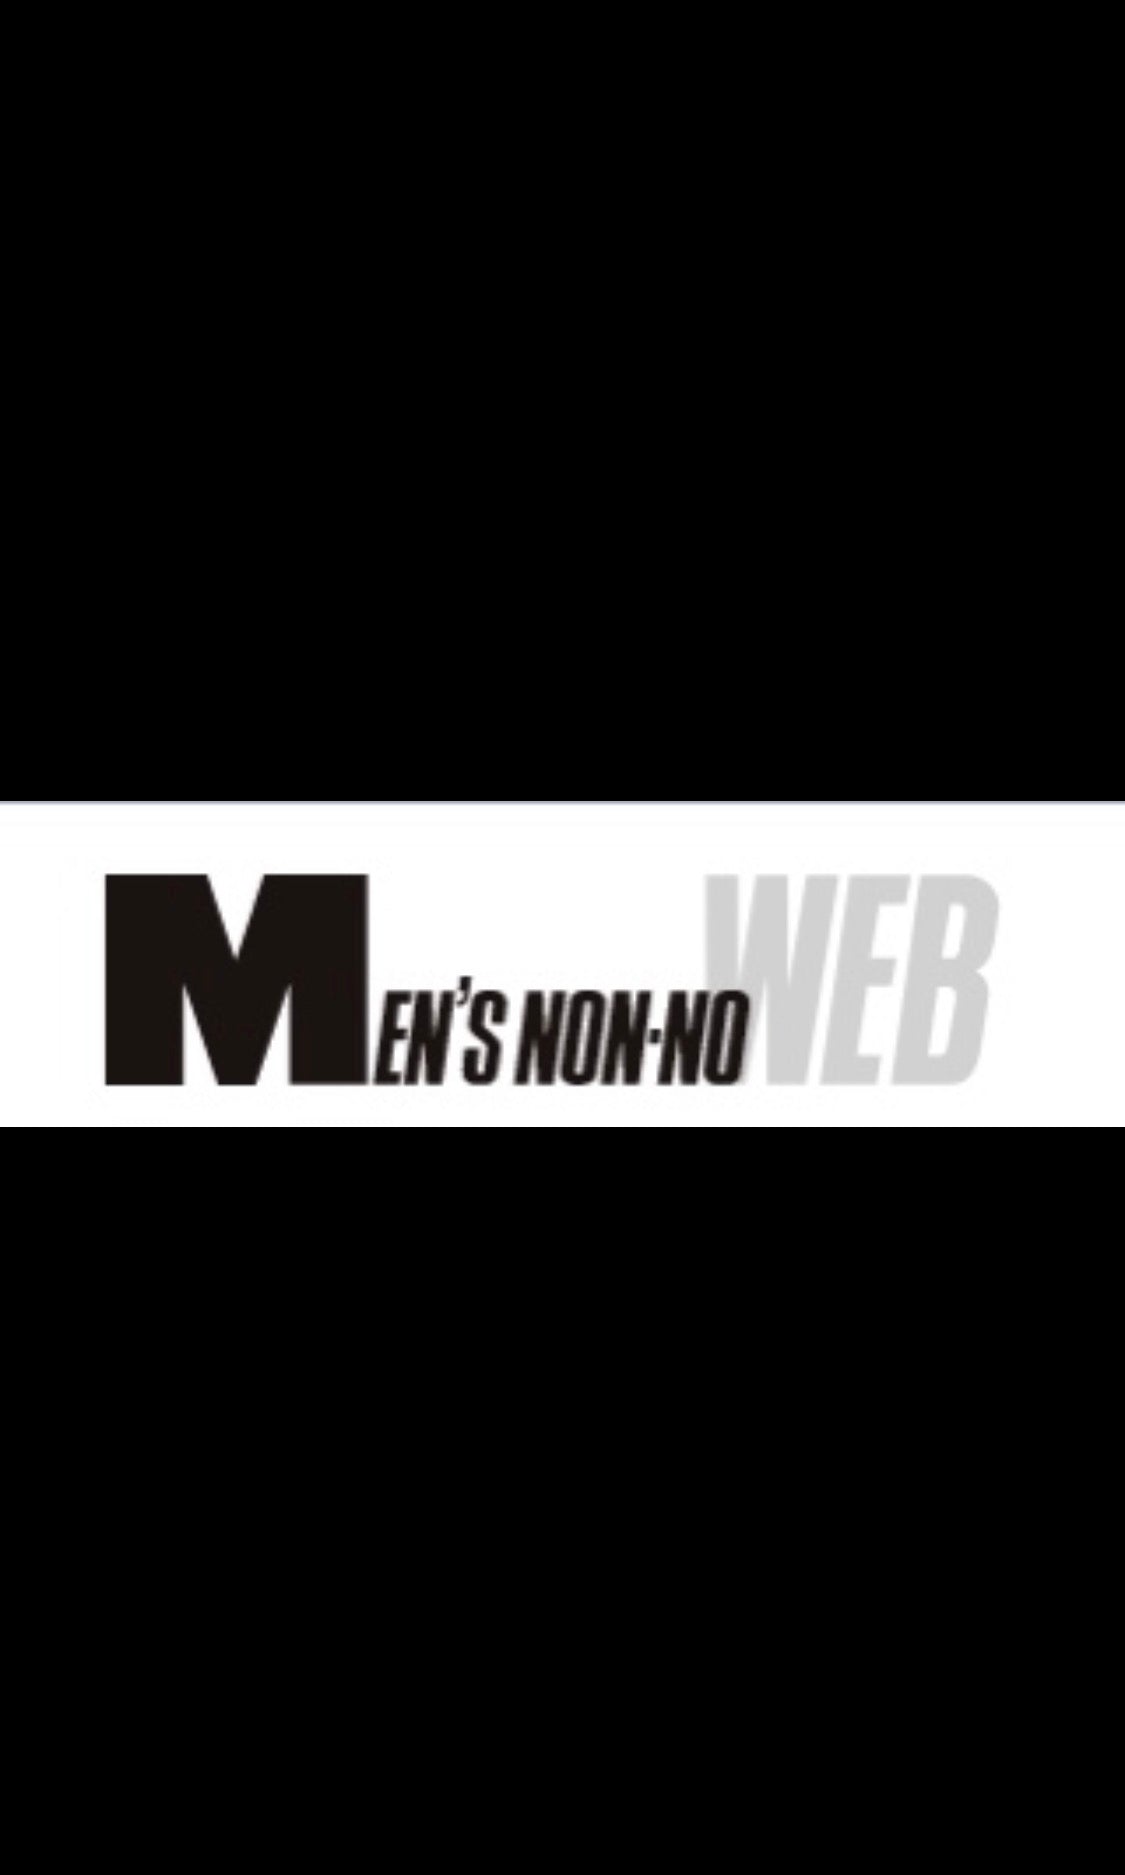 Men's NON-NO WEB 2022.8.15